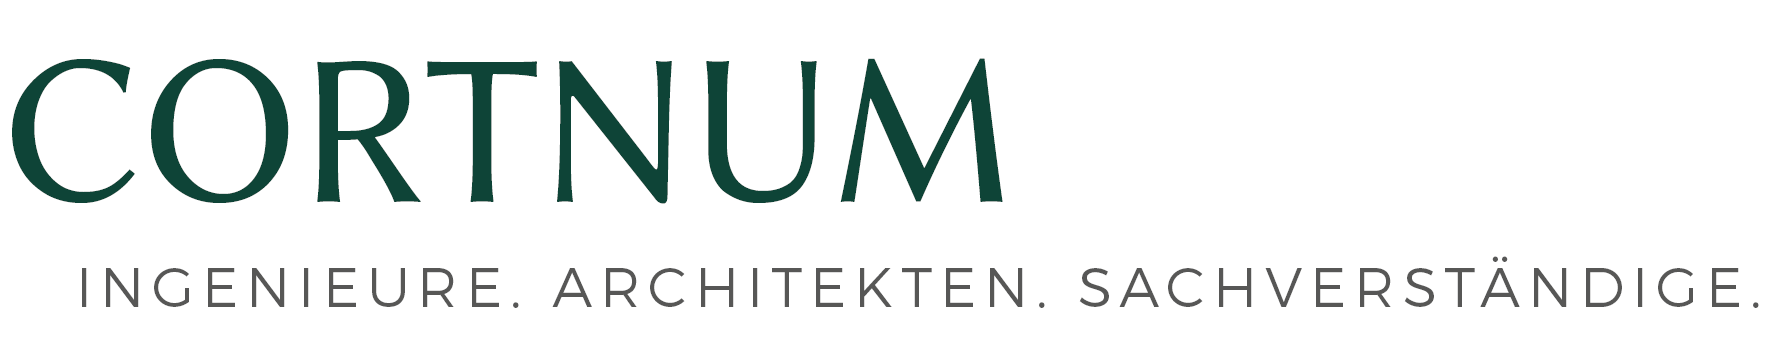 Logo Cortnum lang